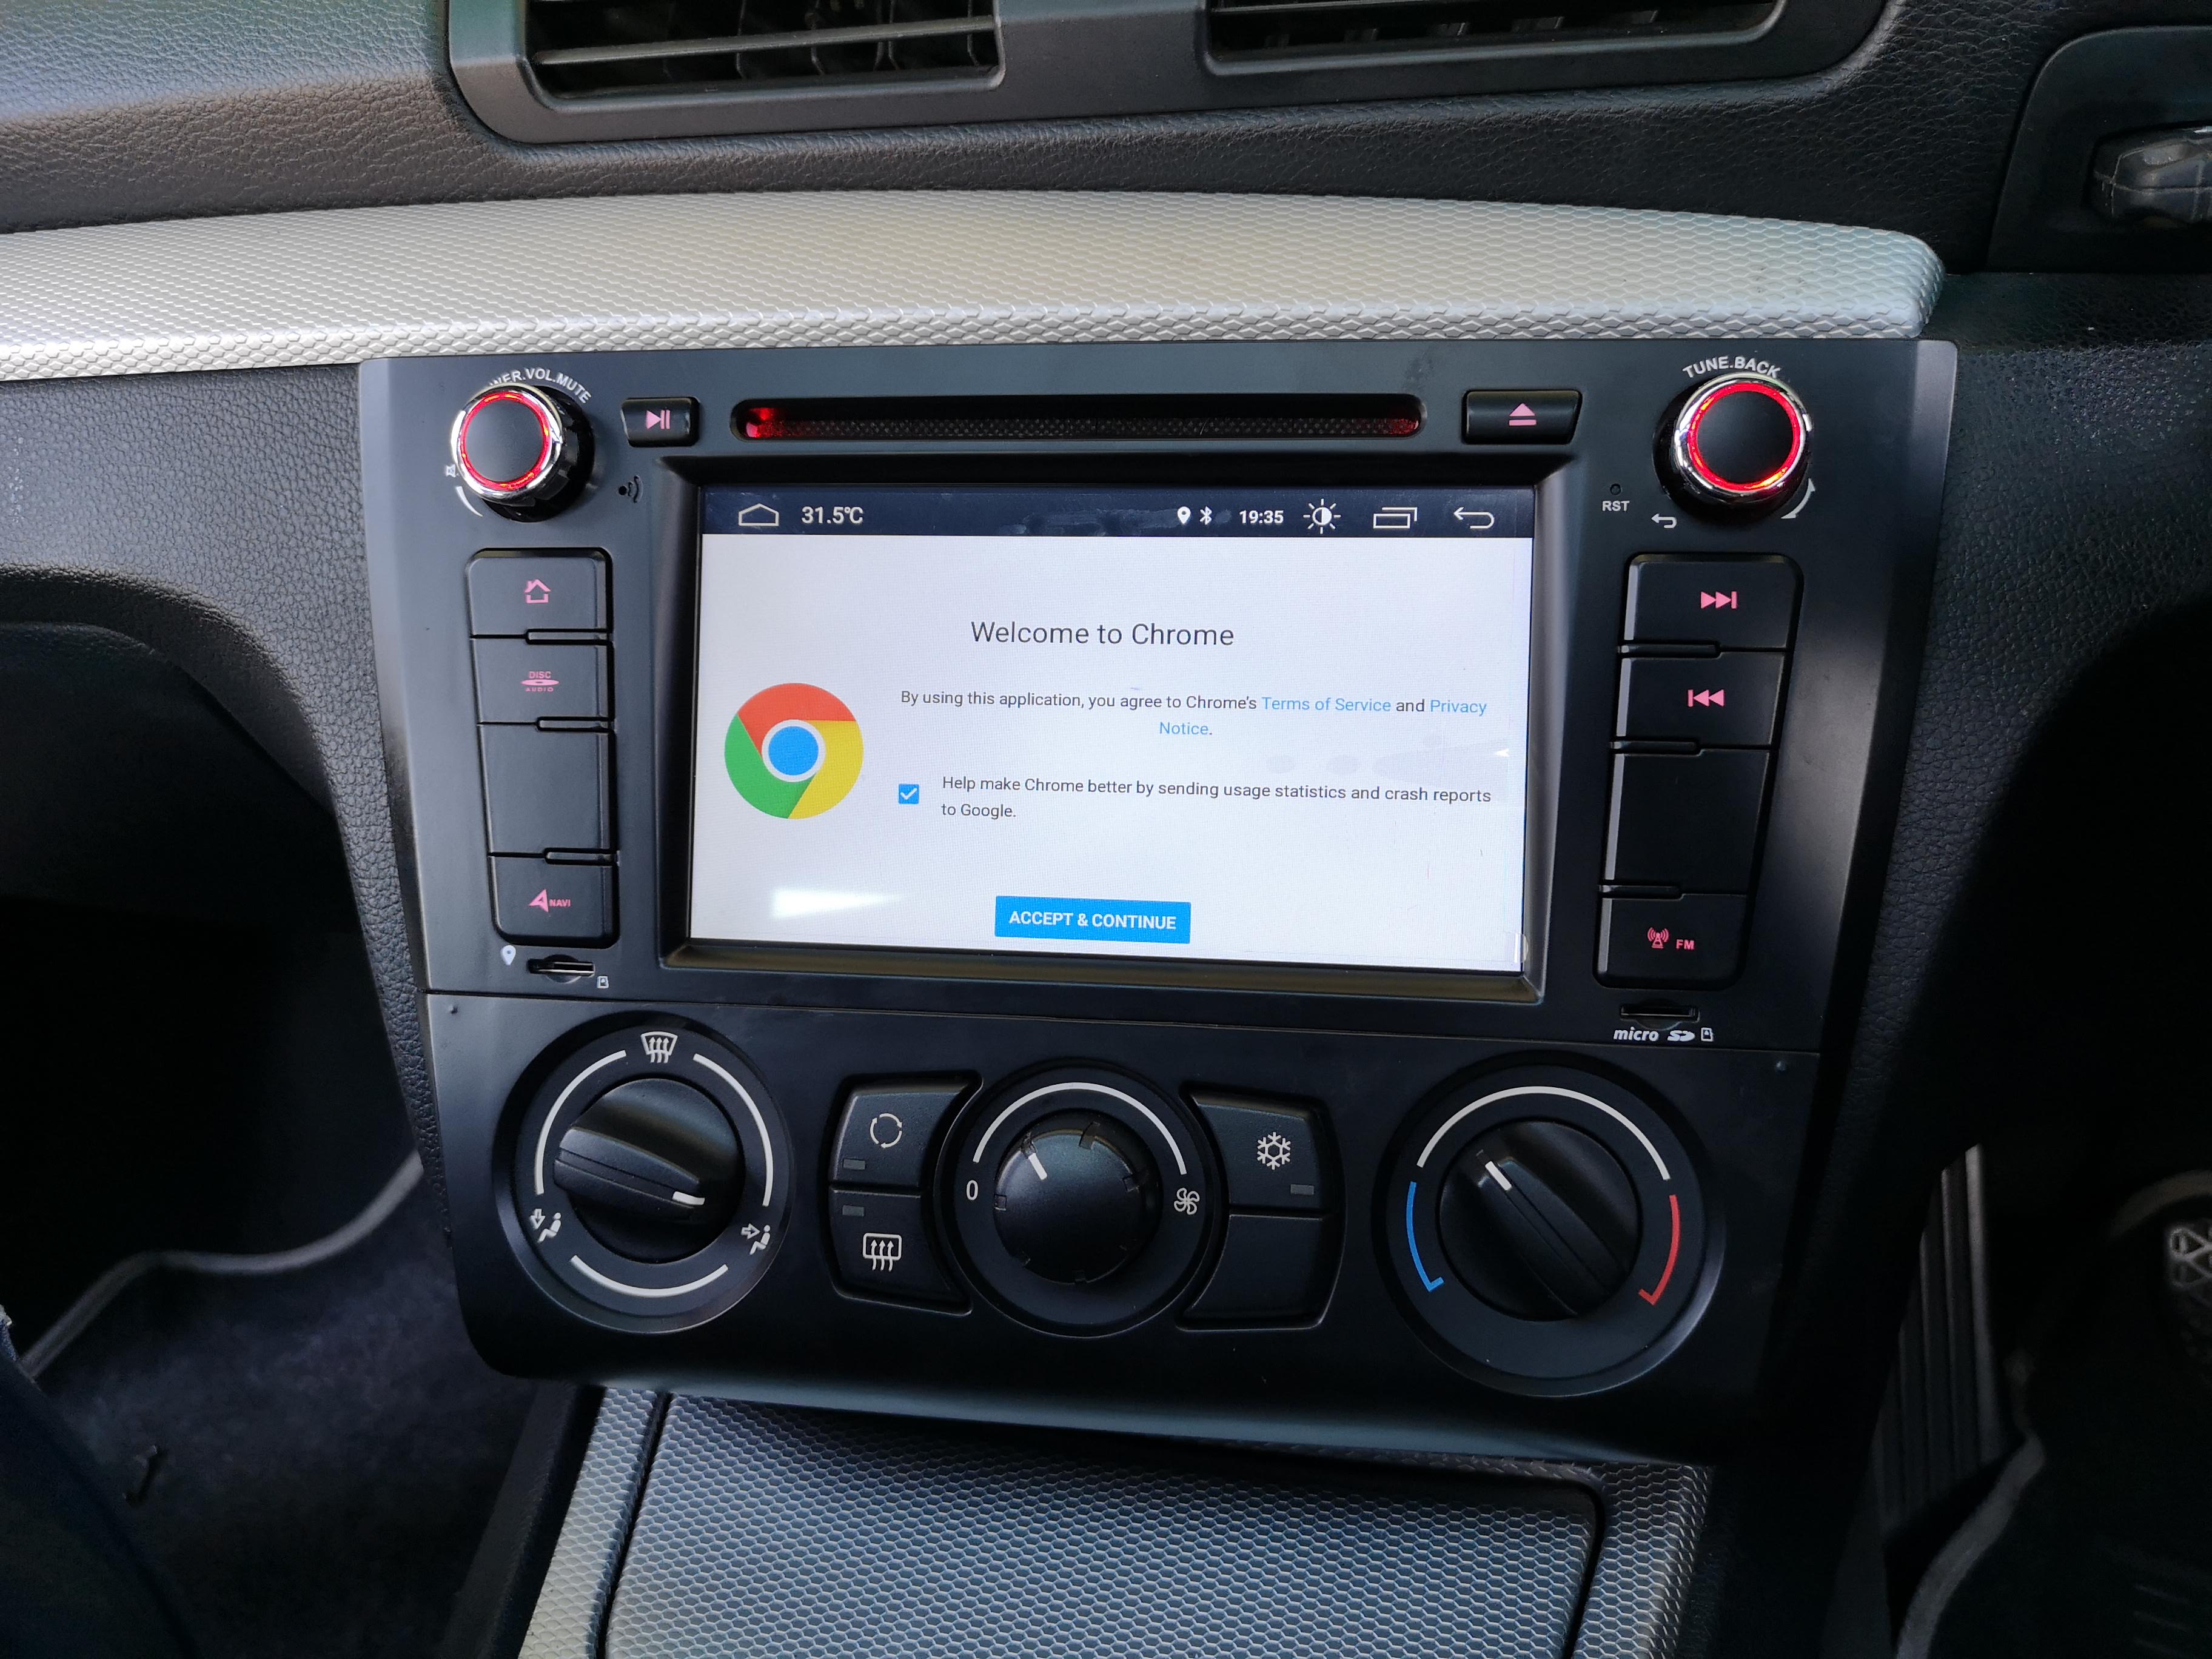 BMW 1er E81 Autoradio Android DVD GPS Navigation, Android Autoradio DVD  Player GPS Navi für BMW 1er E81